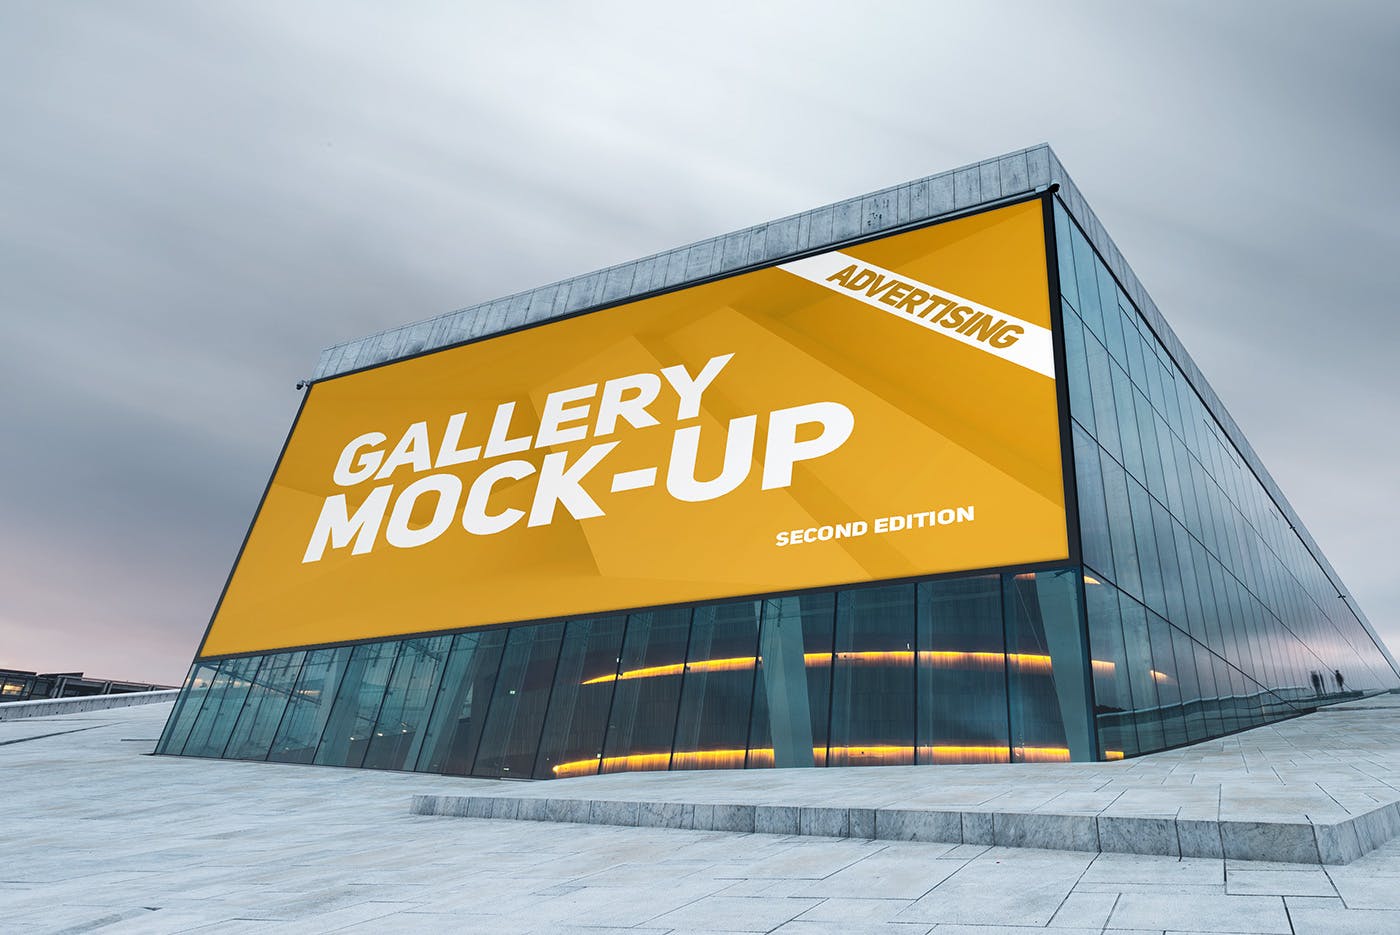 展厅画廊巨幅海报设计图样机第一素材精选模板v3 Gallery Poster Mockup v.3插图(10)